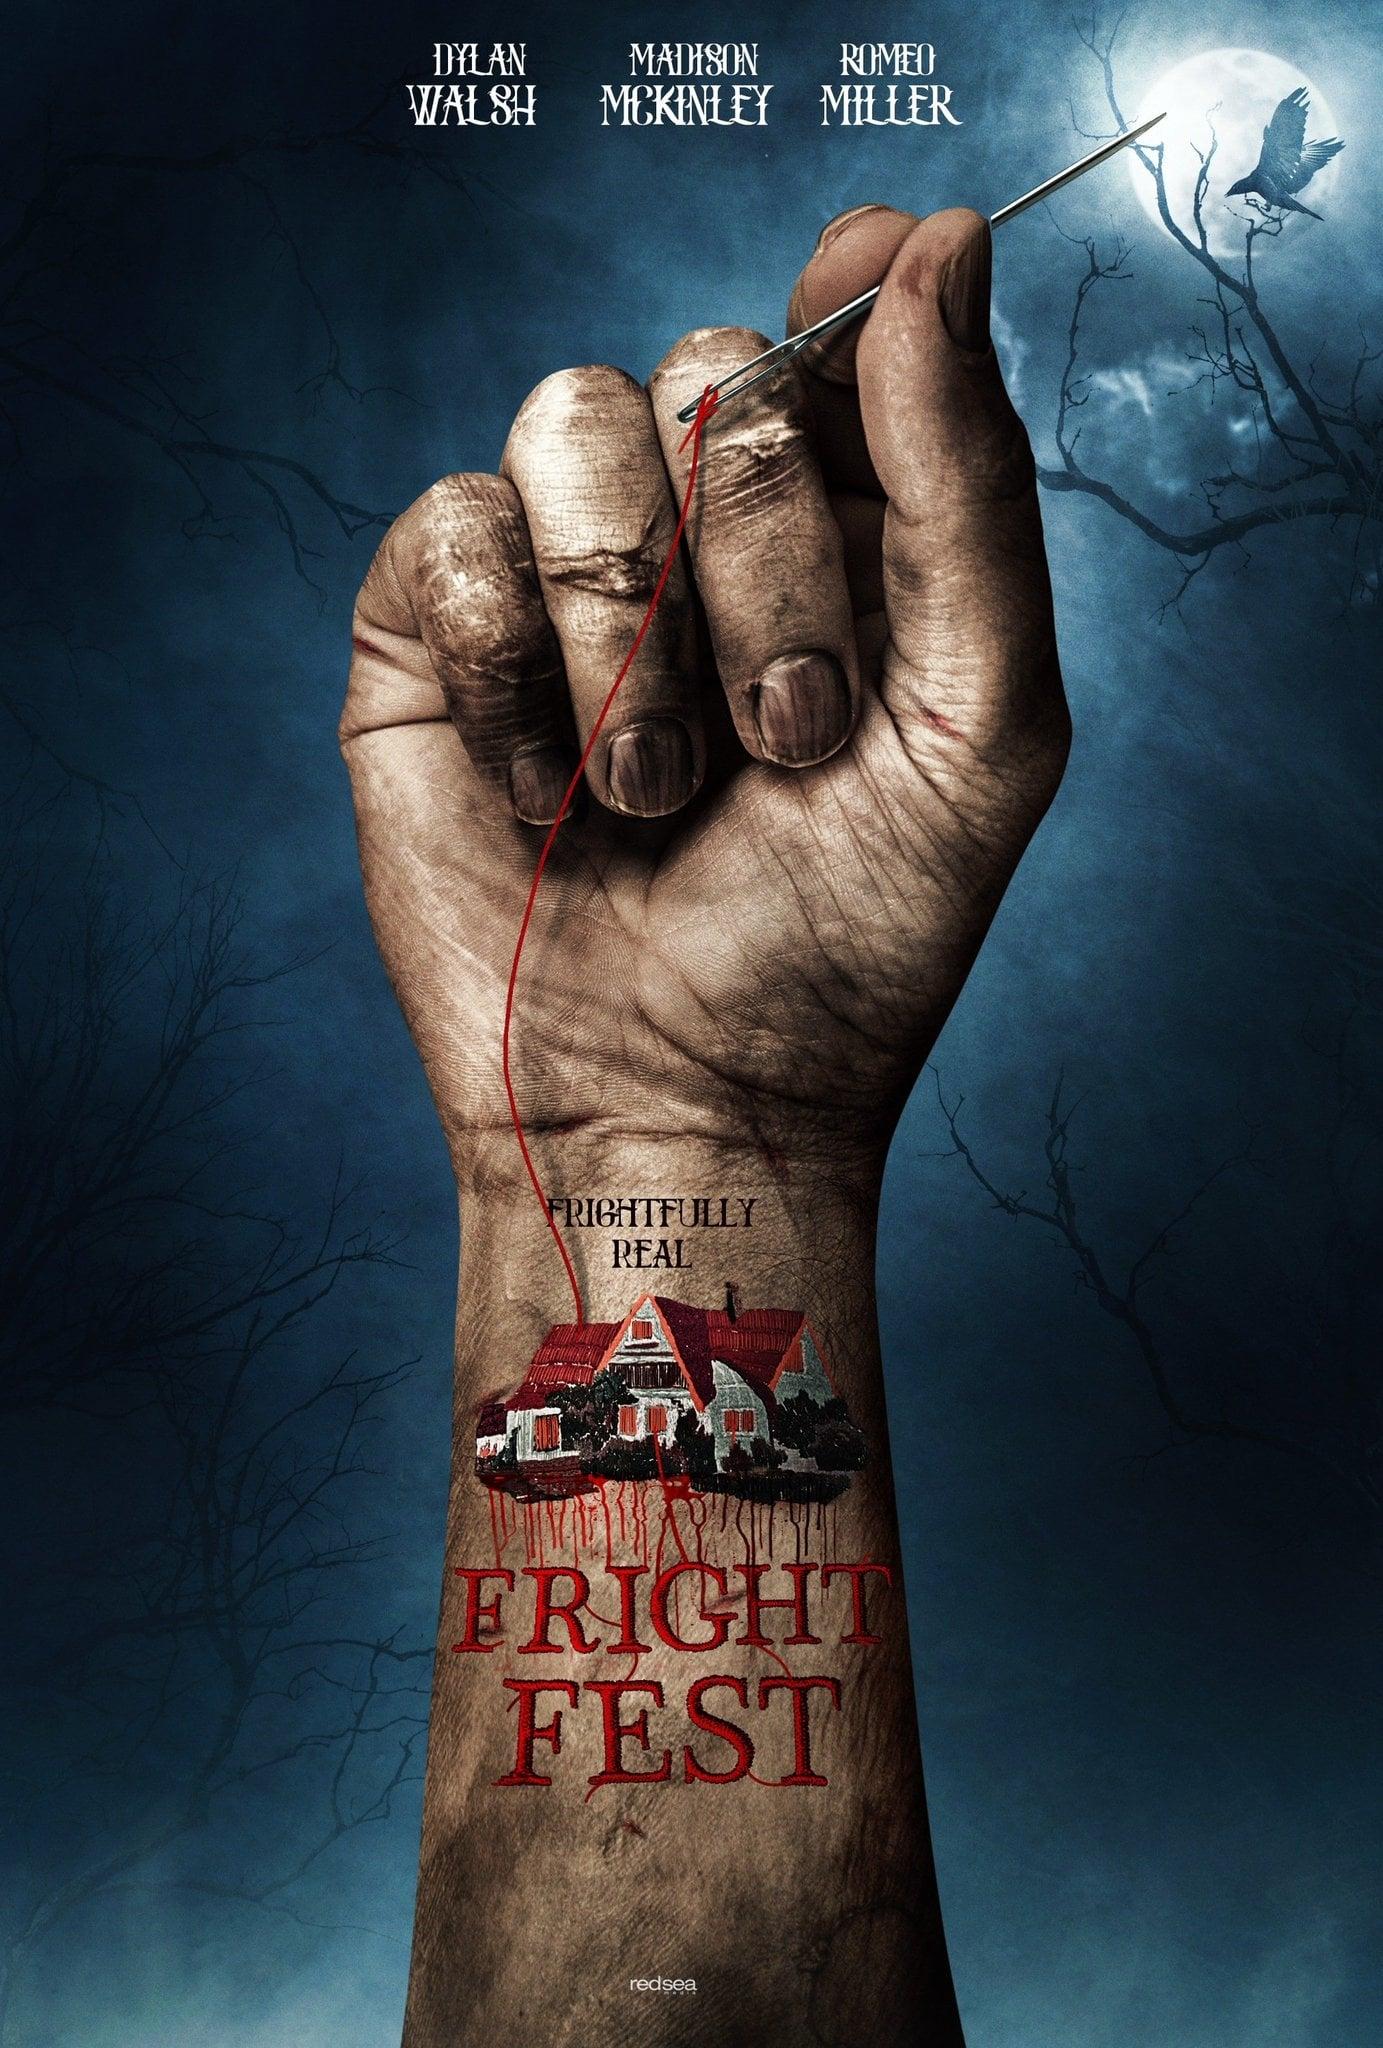 Fright Fest poster